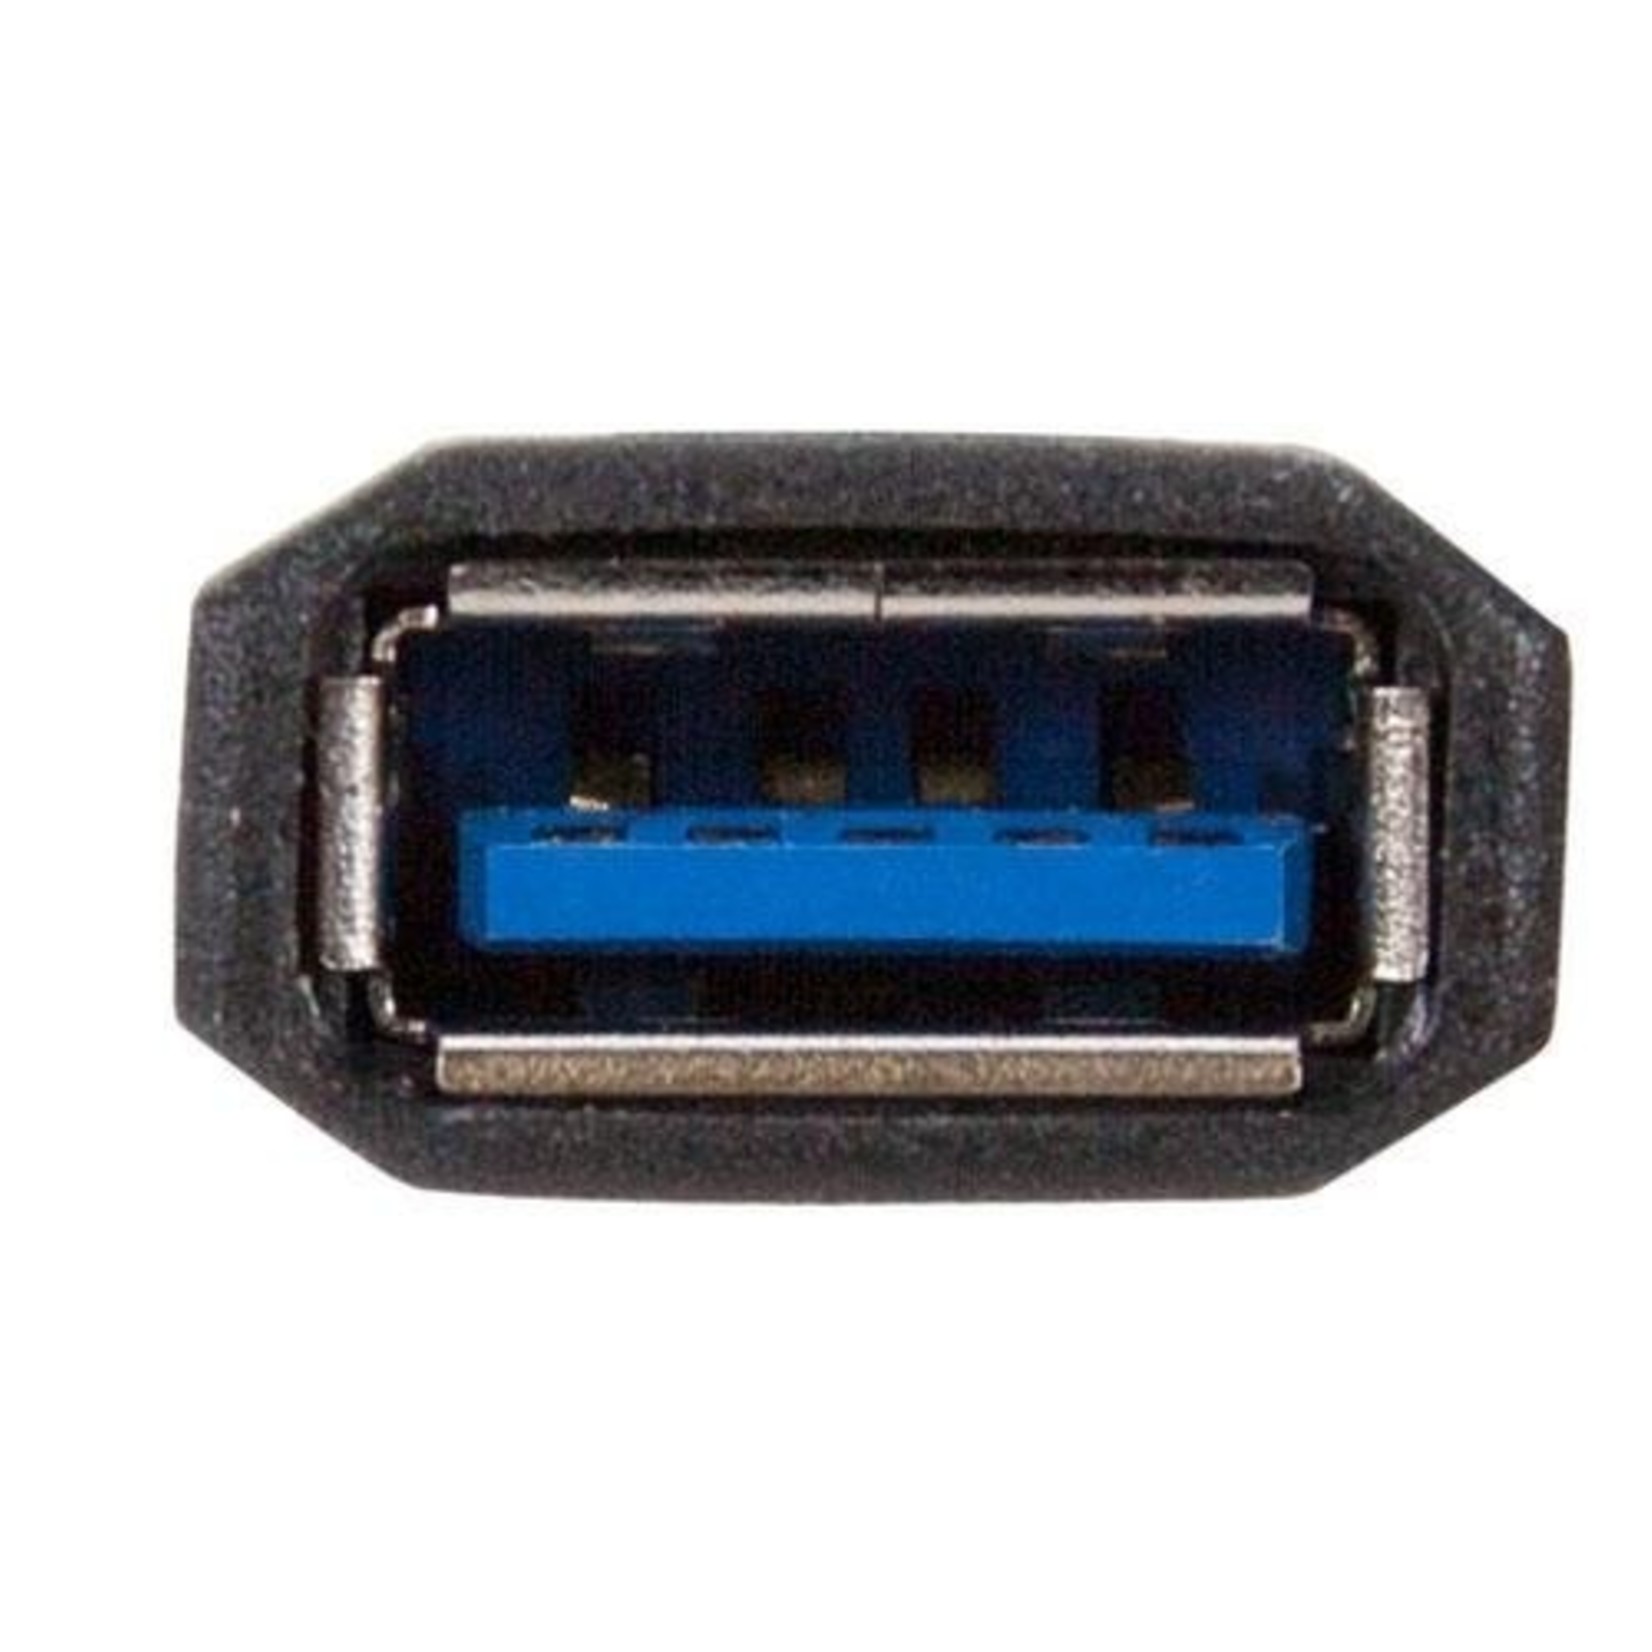 NewerTech NewerTech USB-C to USB-A 3.0 Adapter